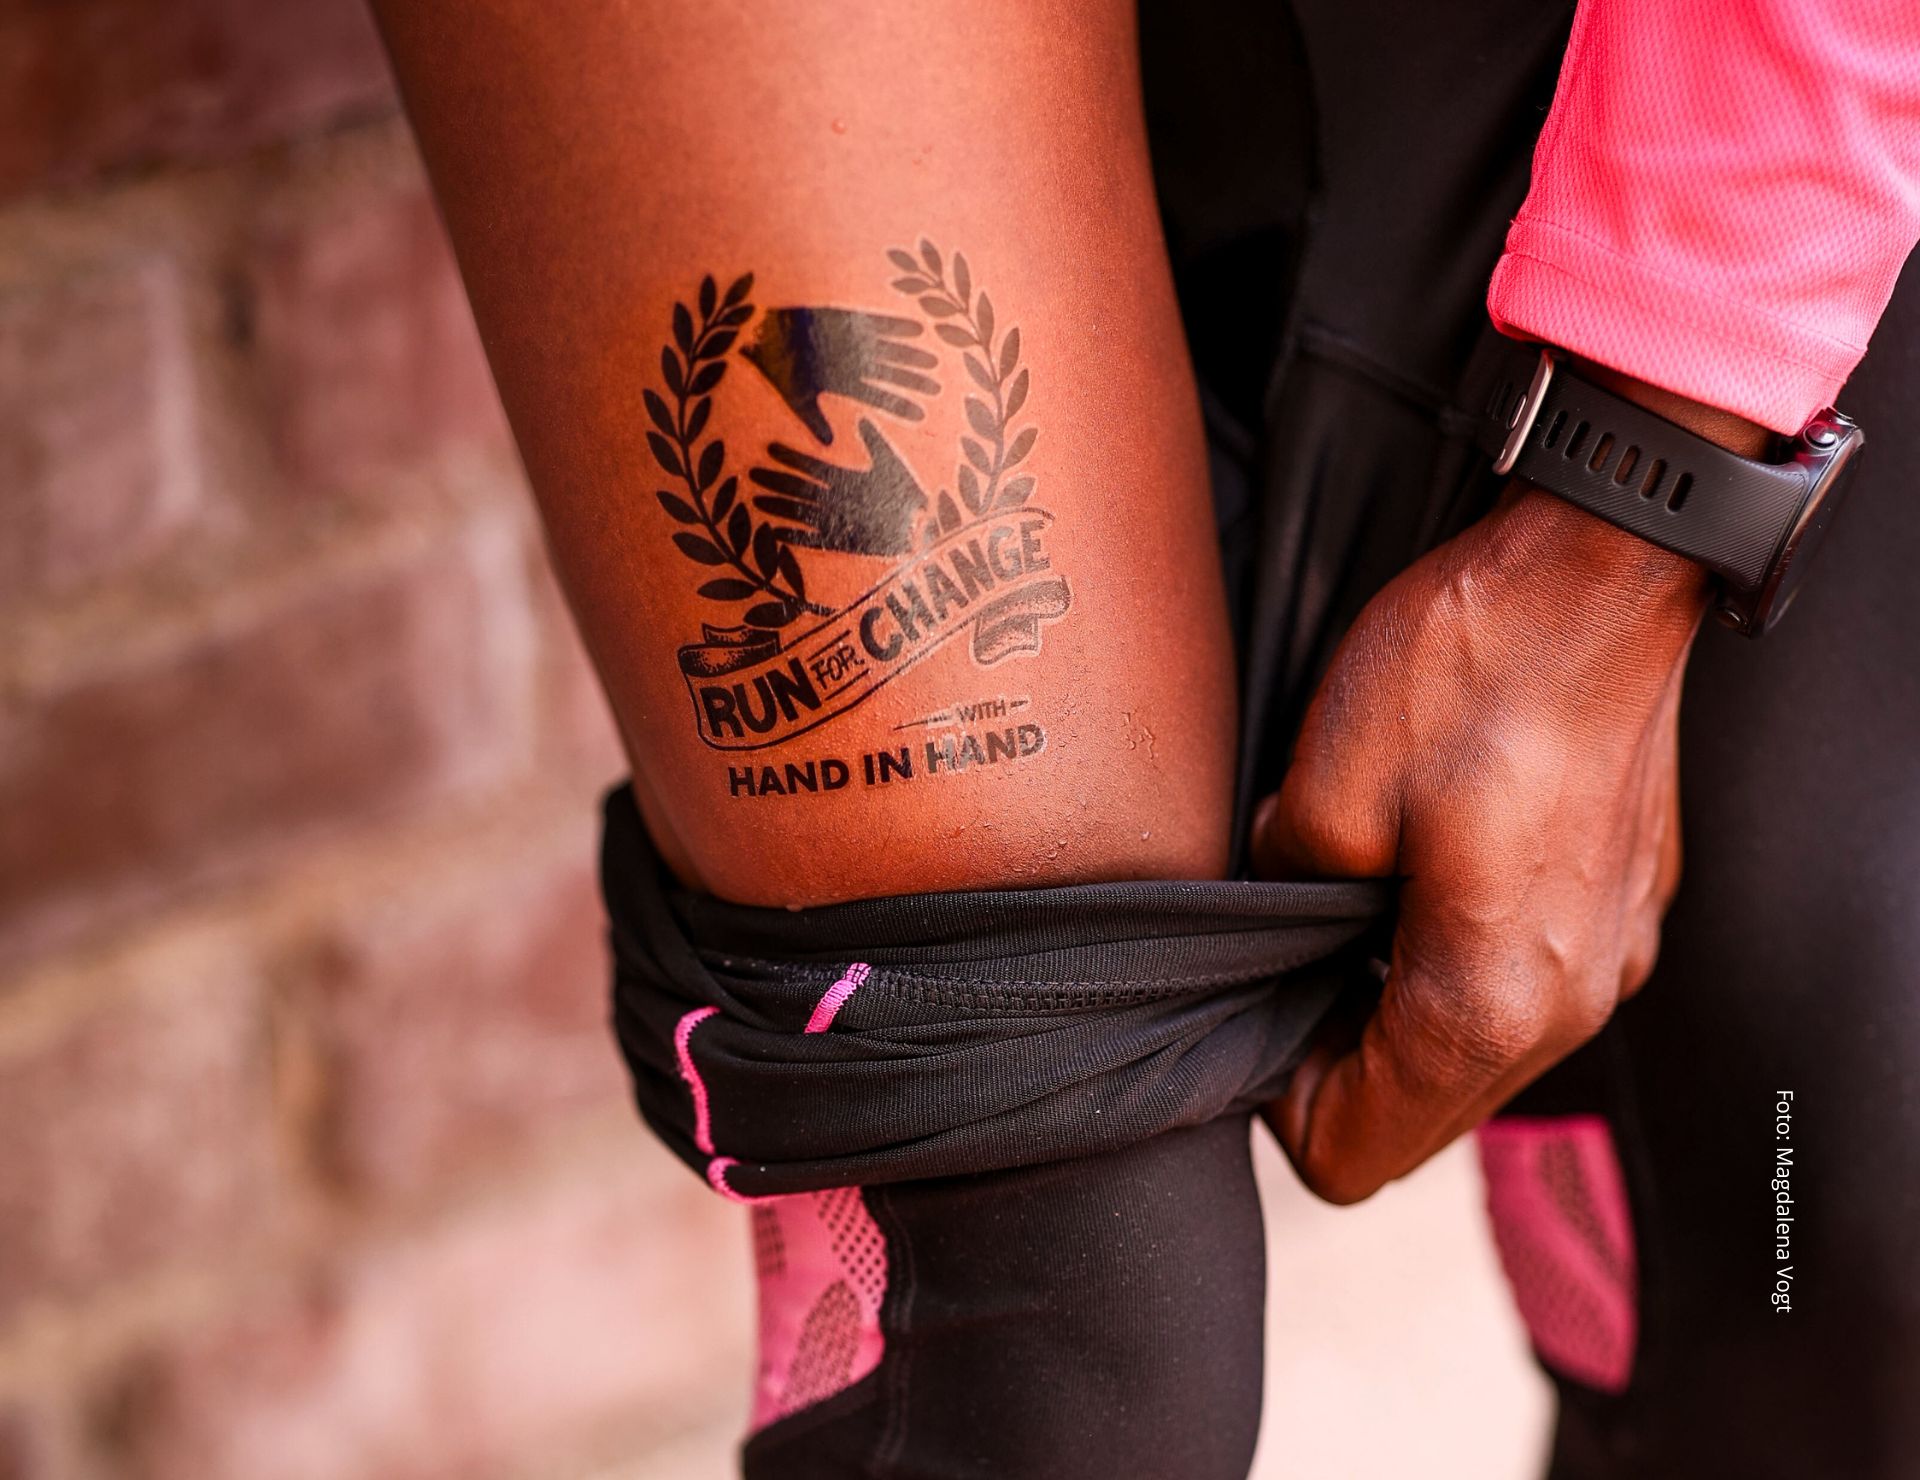 Löpare visar upp sin tatuering med texten "Run for Change" och "Hand in Hand".